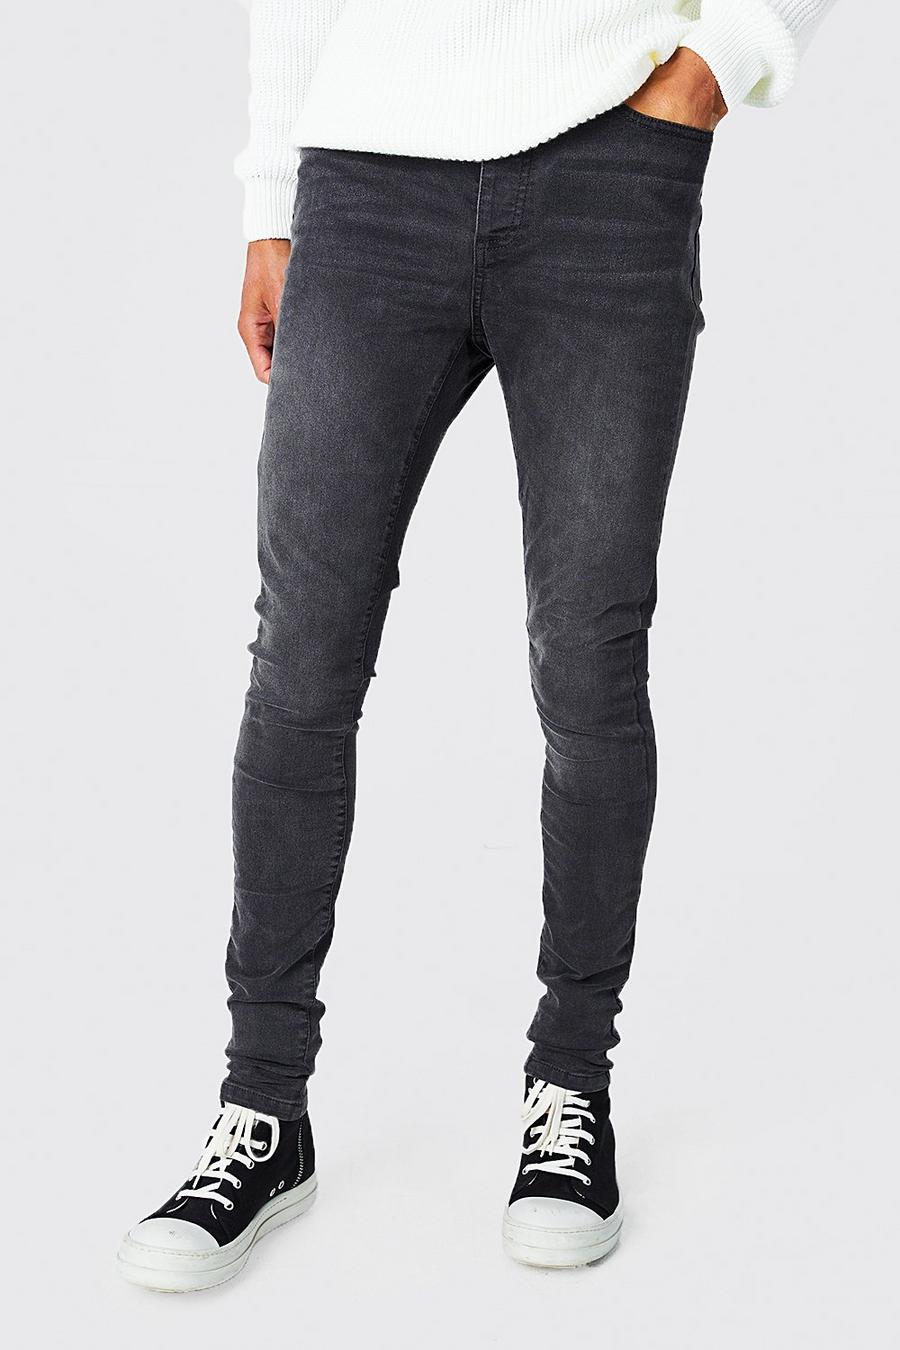 פחם gris ג'ינס נמתח עם כותנה ממוחזרת בגזרת סקיני, לגברים גבוהים